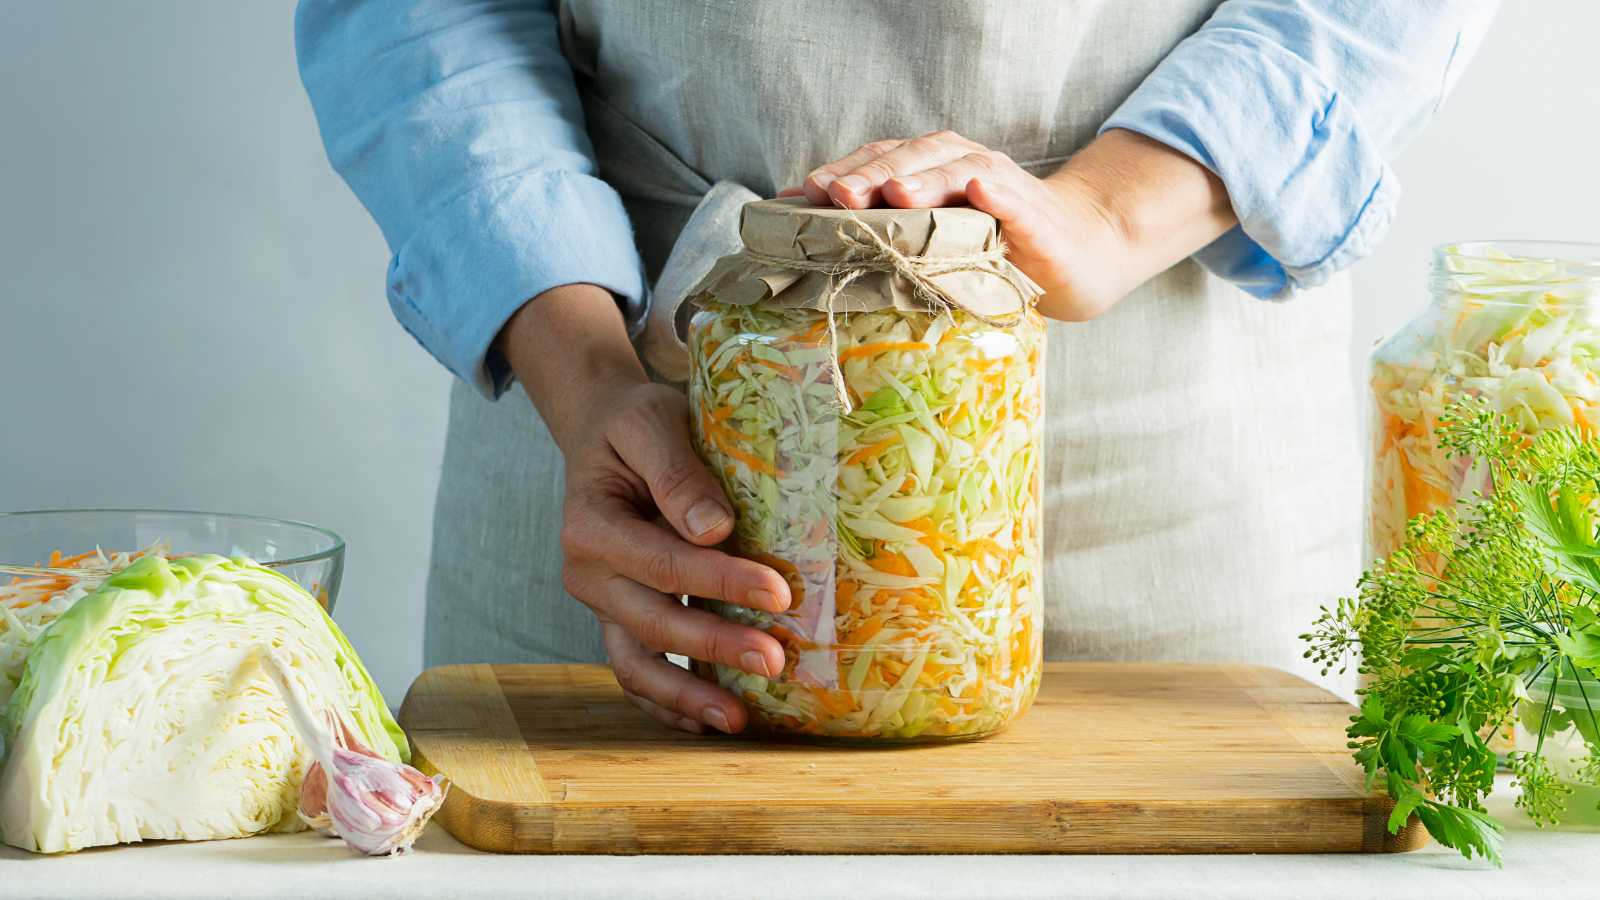 A jar of sauerkraut held by hands.